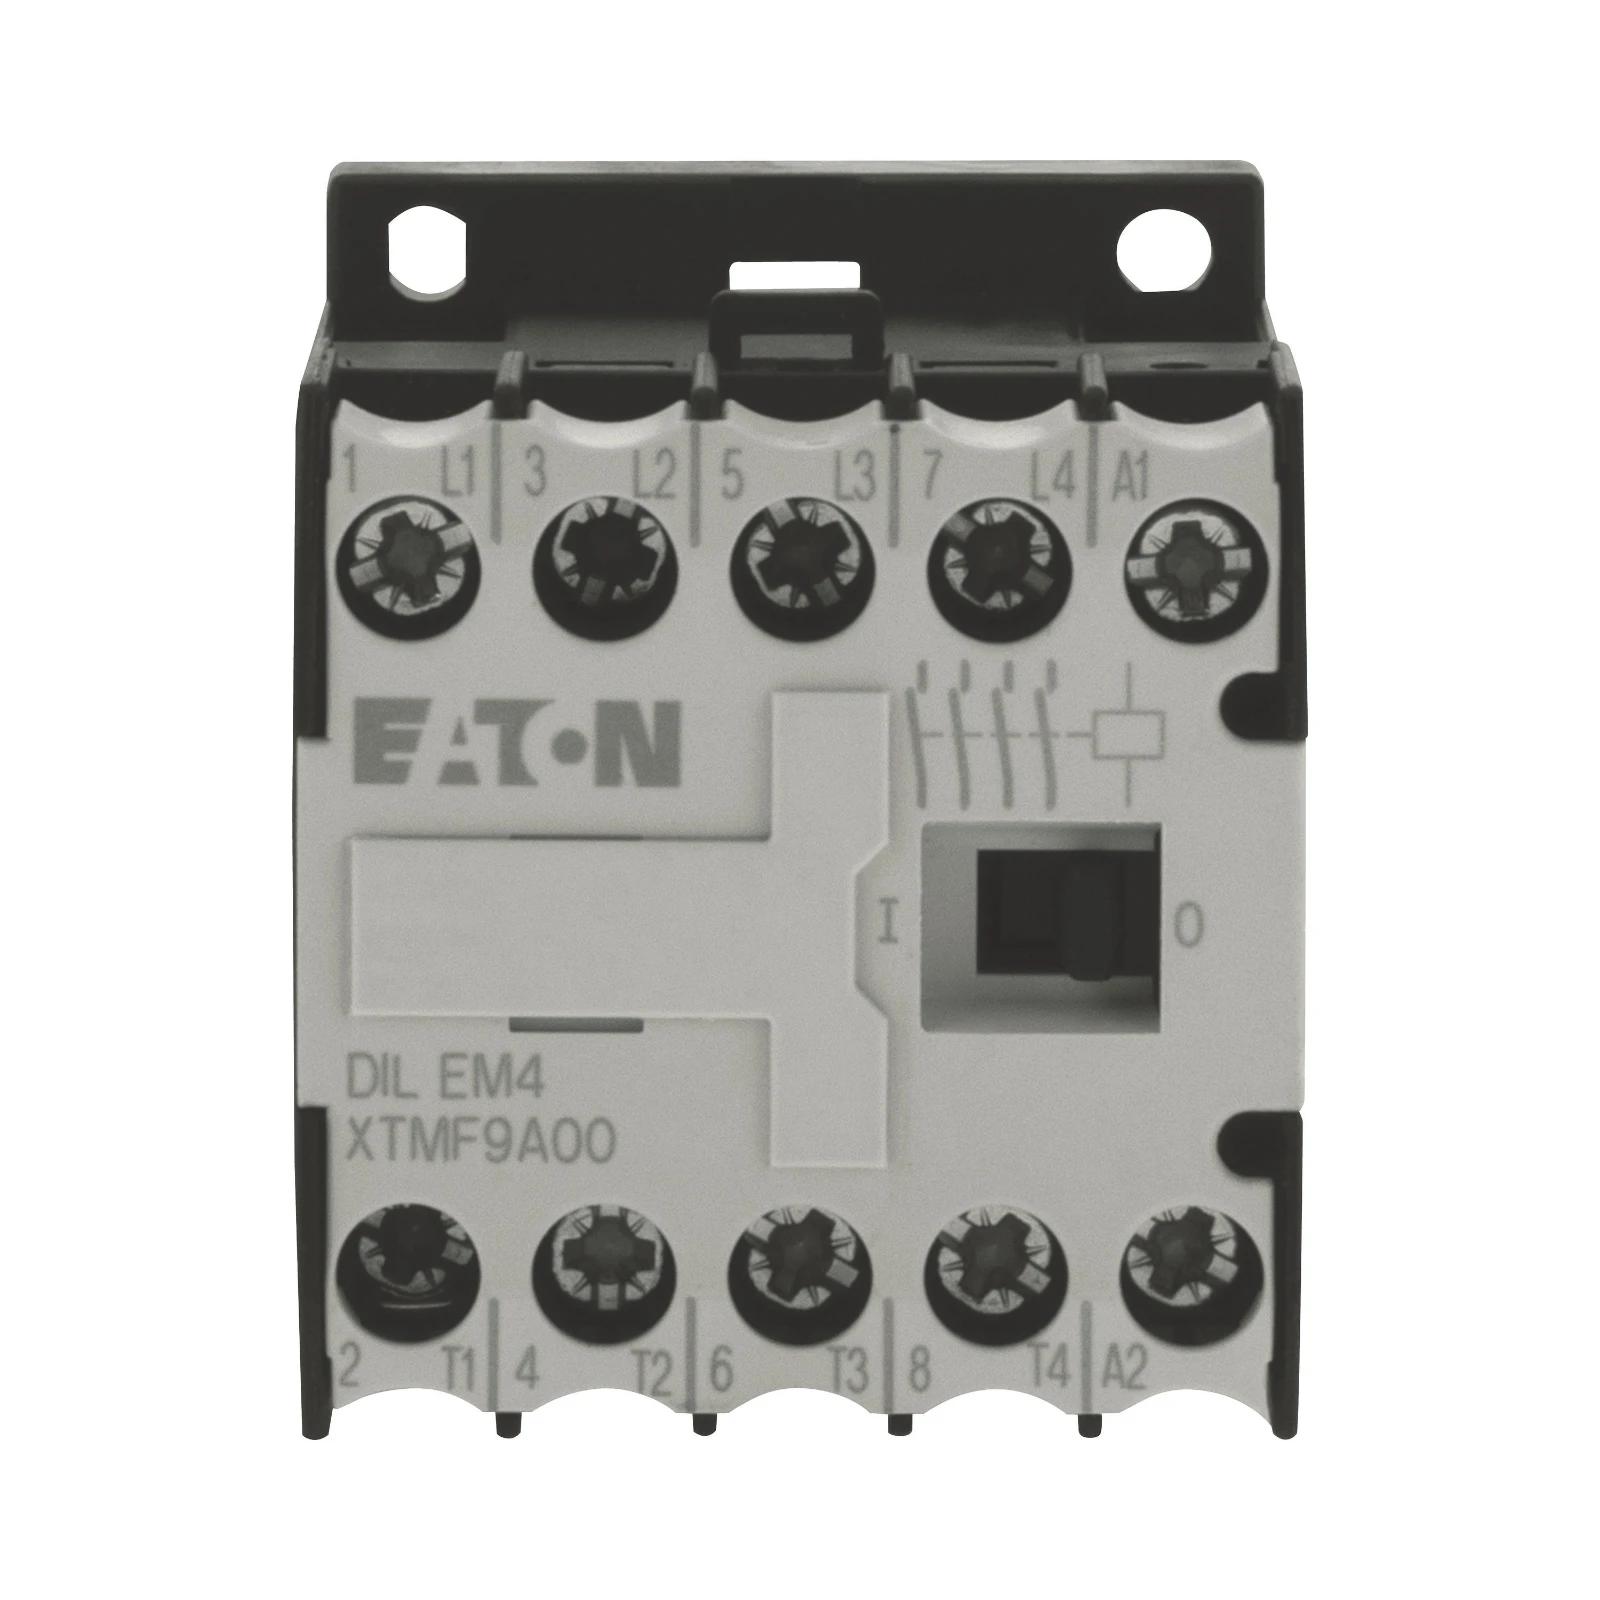 2062102 - Eaton DILEM4-G(12VDC)